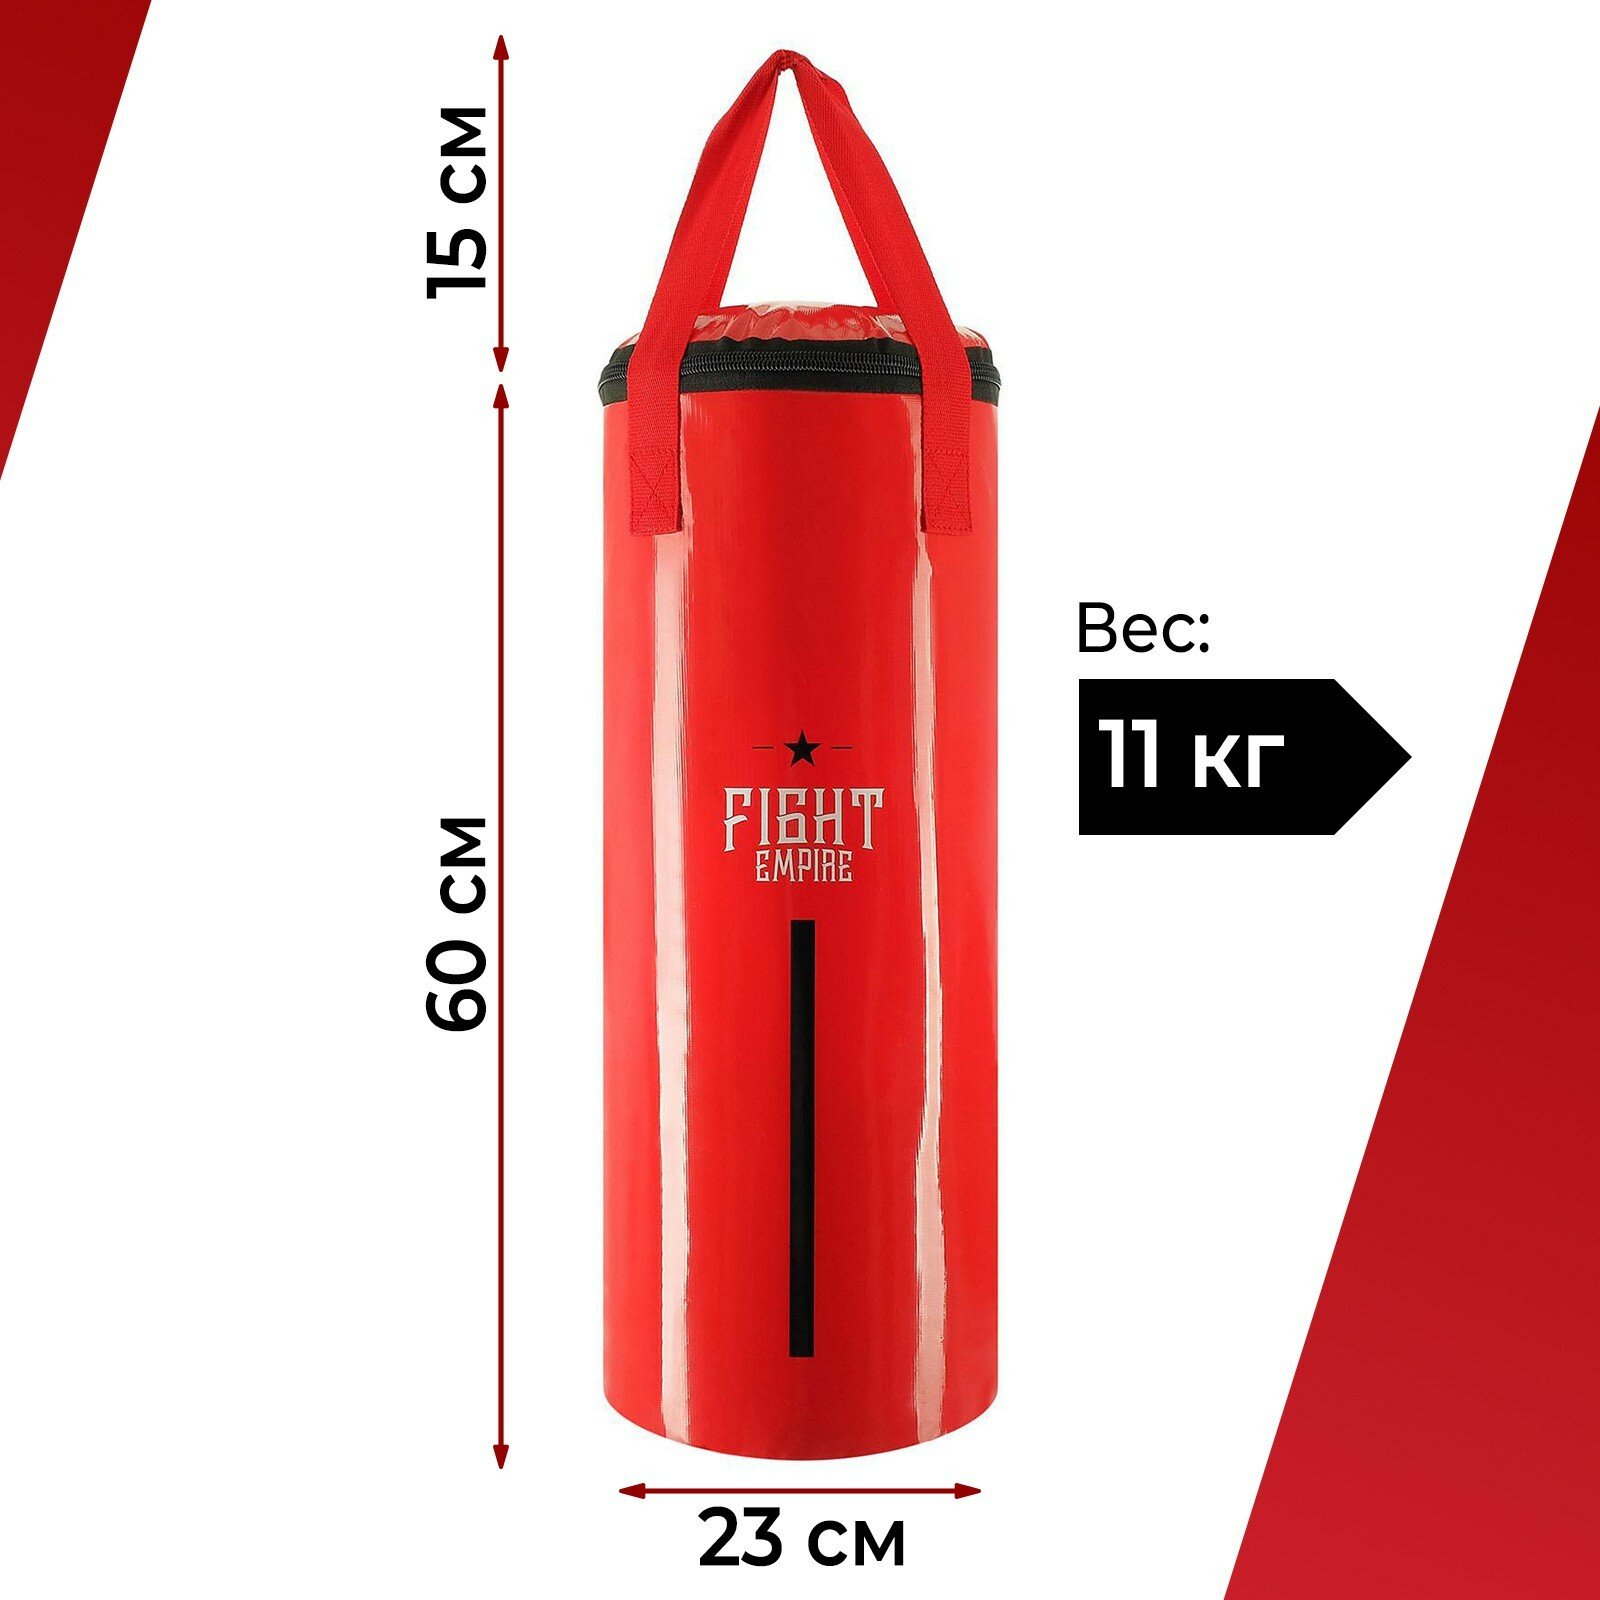 Боксёрский мешок FIGHT EMPIRE, вес 11 кг, на ленте ременной, цвет красный